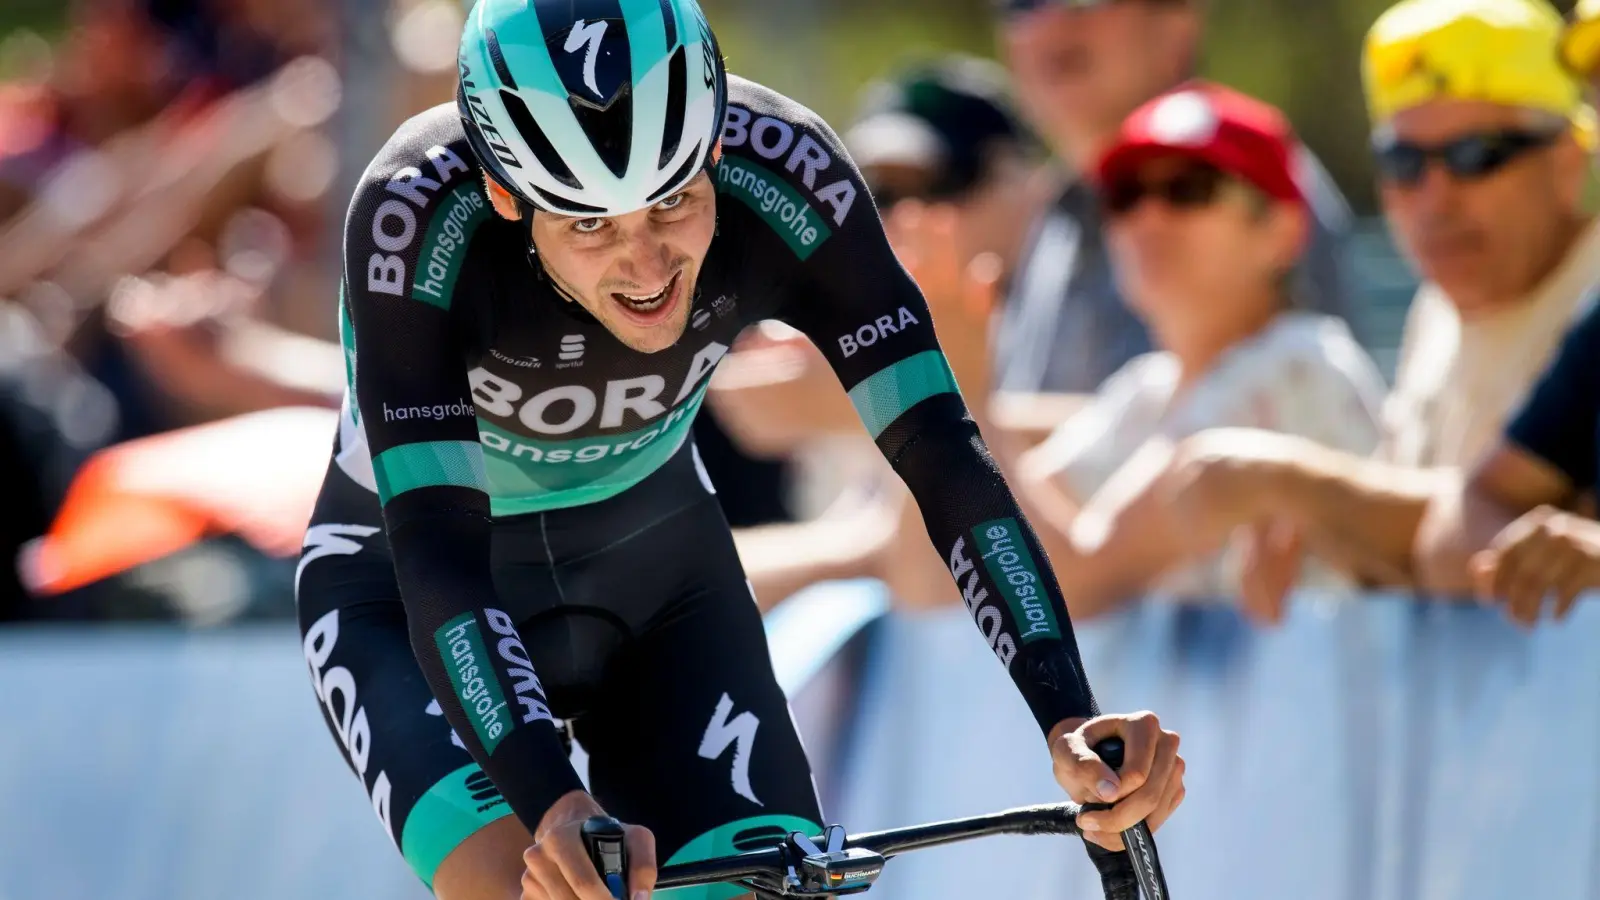 Statt die Vuelta zu fahren peilt Emanuel Buchmann nun auf der Deutschland Tour eine gute Platzierung an. (Foto: Jean-Christophe Bott/KEYSTONE/dpa)